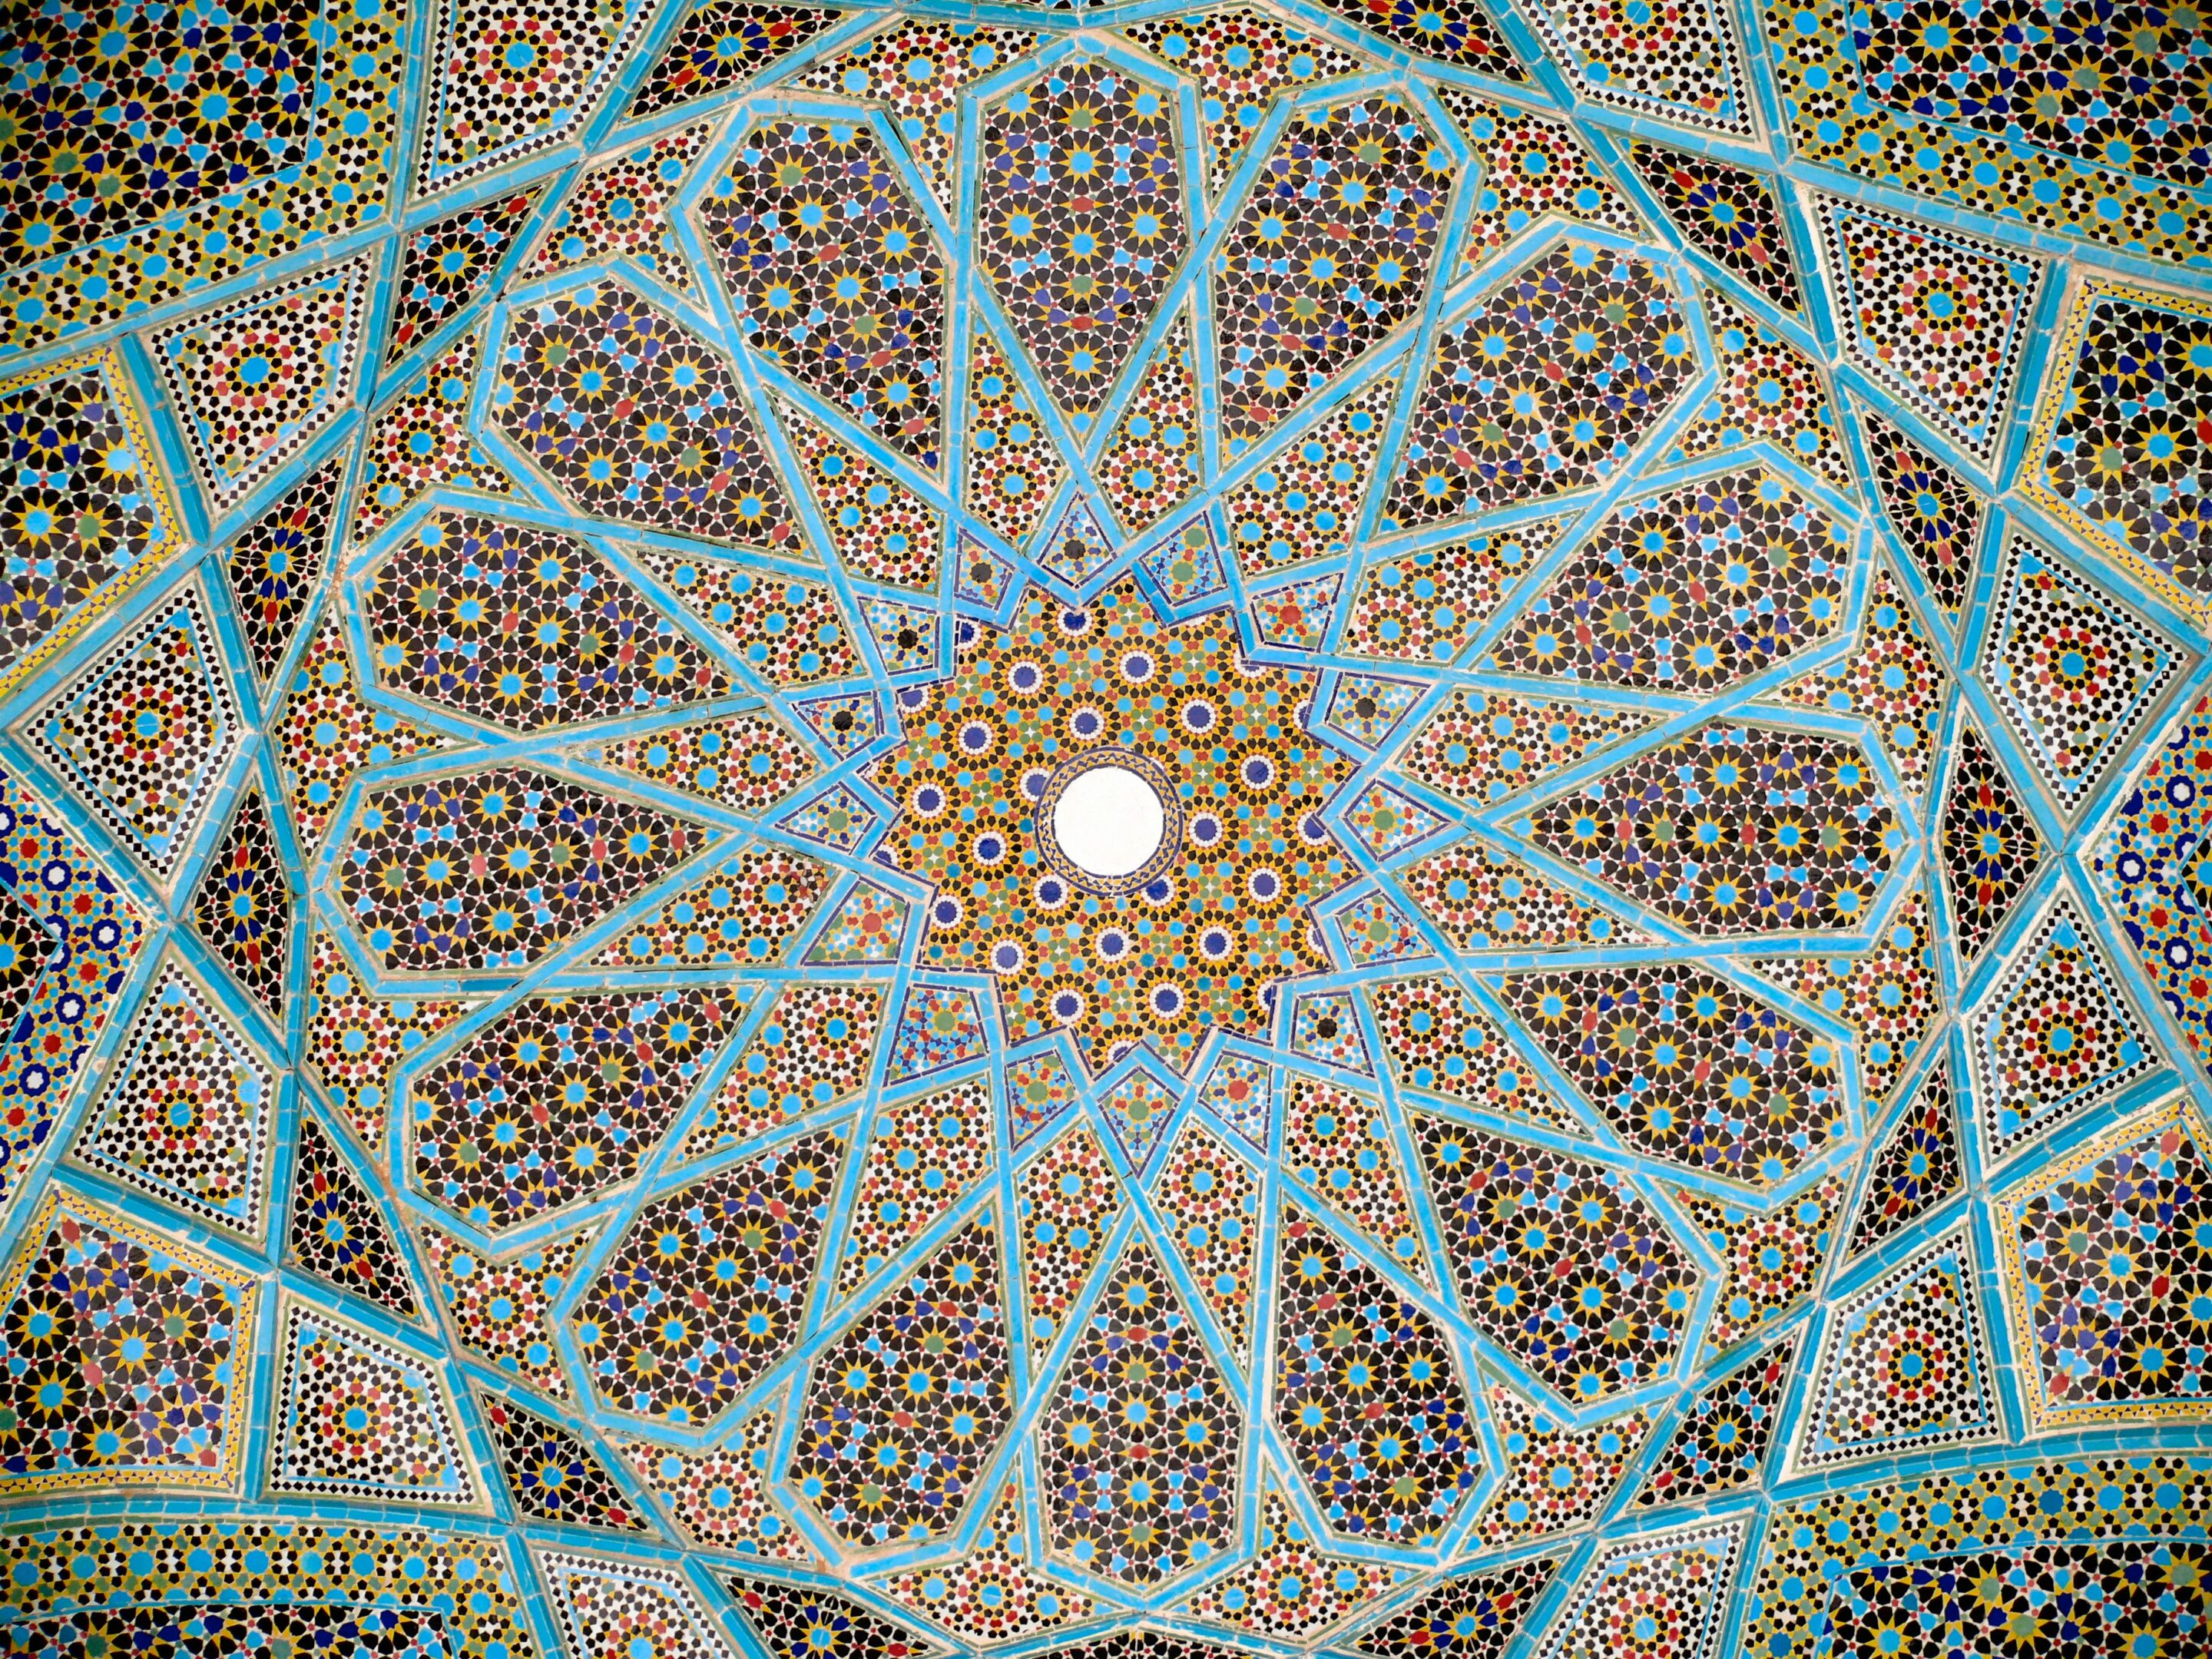 Plafond de la tombe du poète persan Hafez à Shiraz, dans la province de Fars, en Iran.
Crédit : Pentocelo — Travail personnel, Wikimedia commons